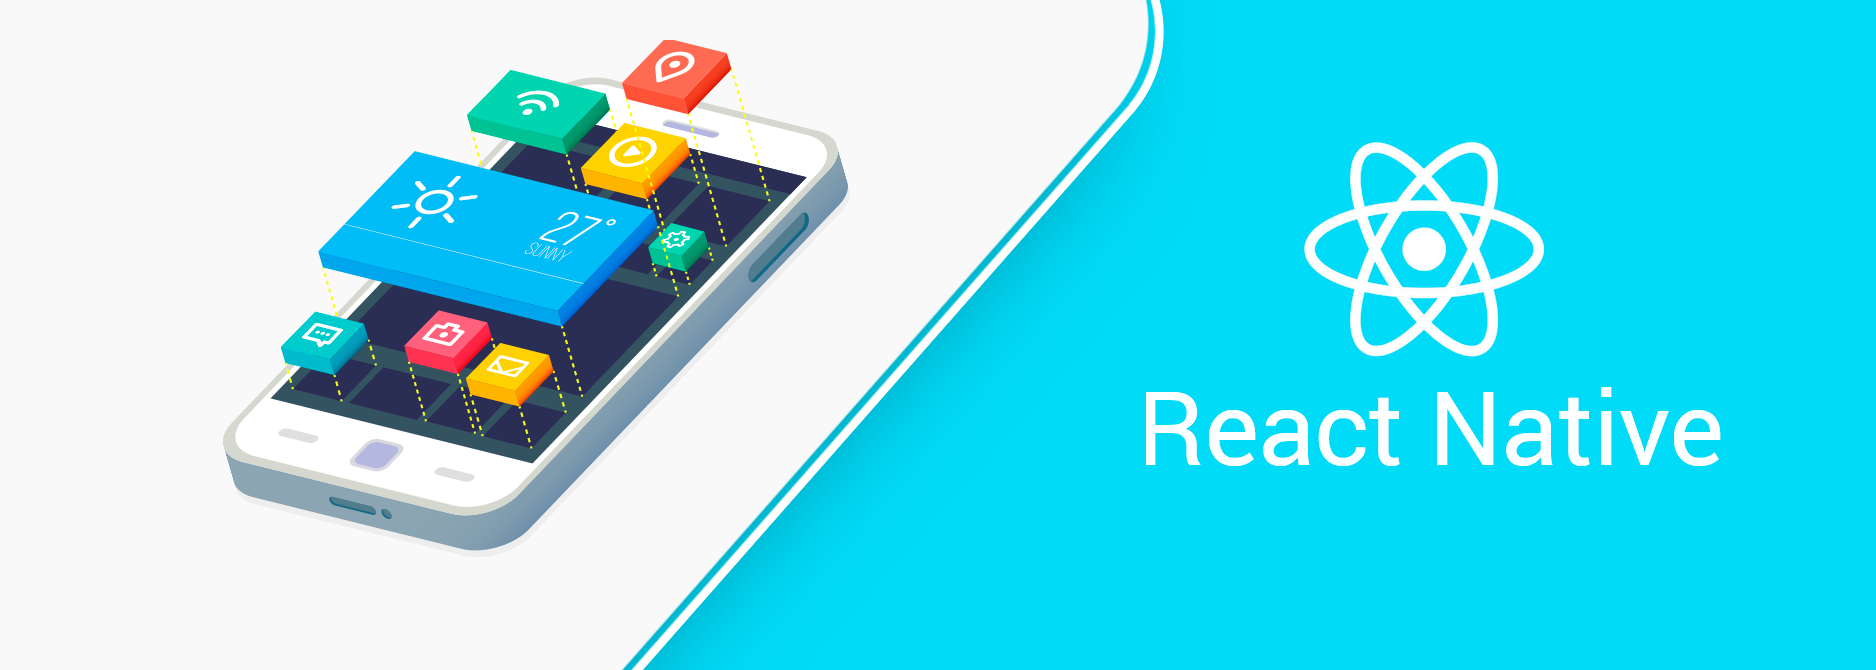 Desarrollo de Apps con React Native para IOS, Android